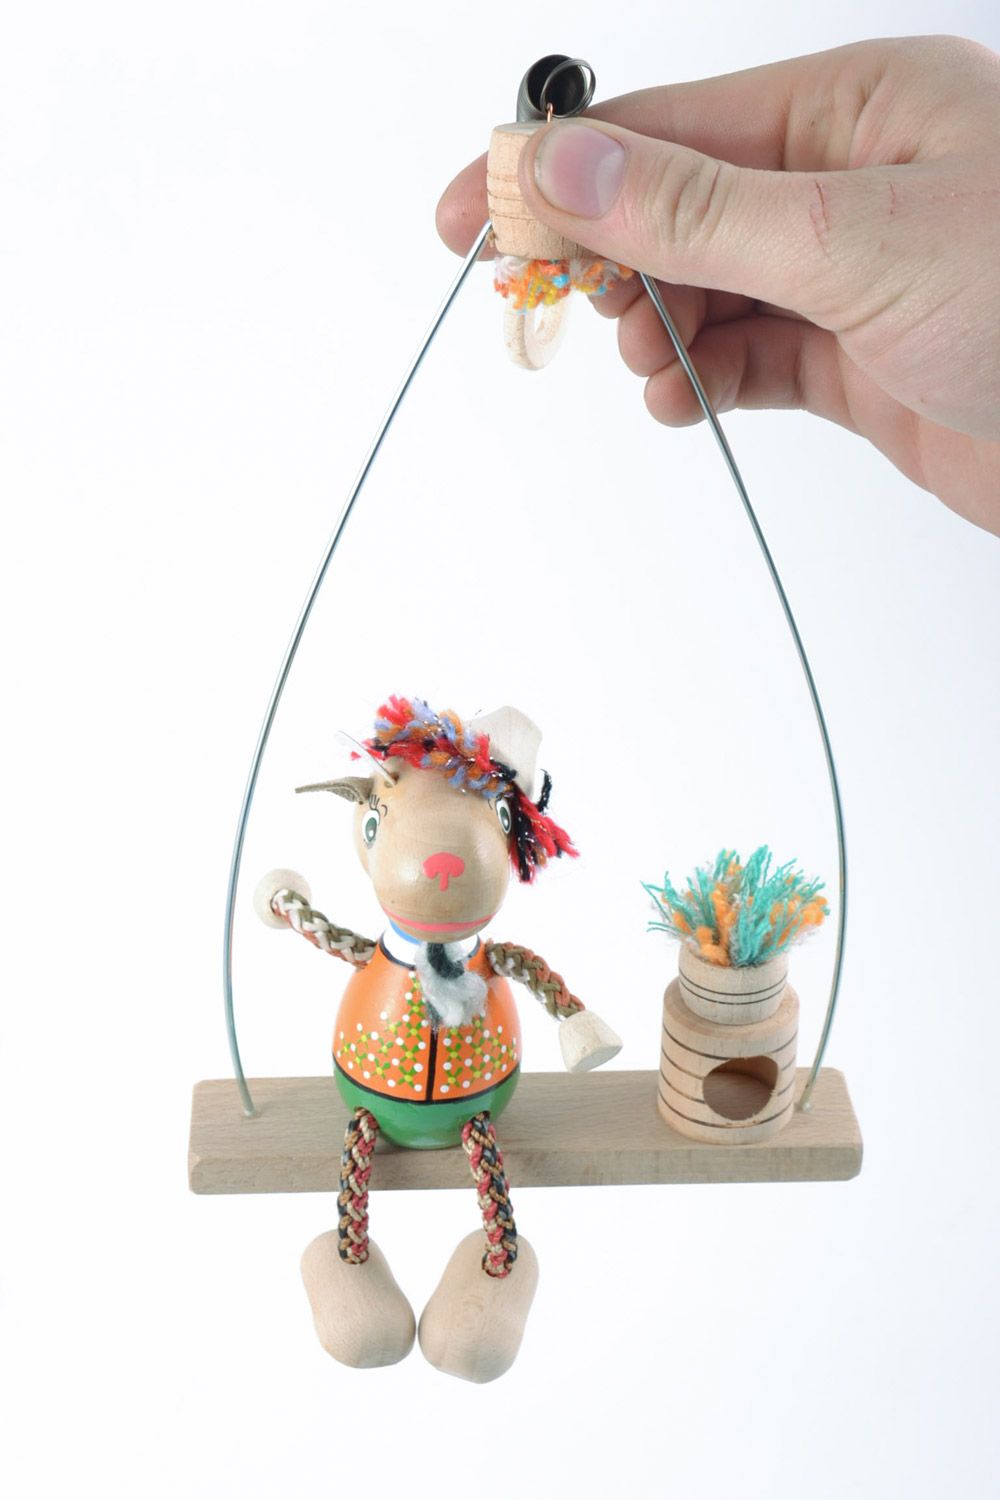 Игрушка из дерева на пружинке ручной работы оригинальная развивающая для детей фото 2